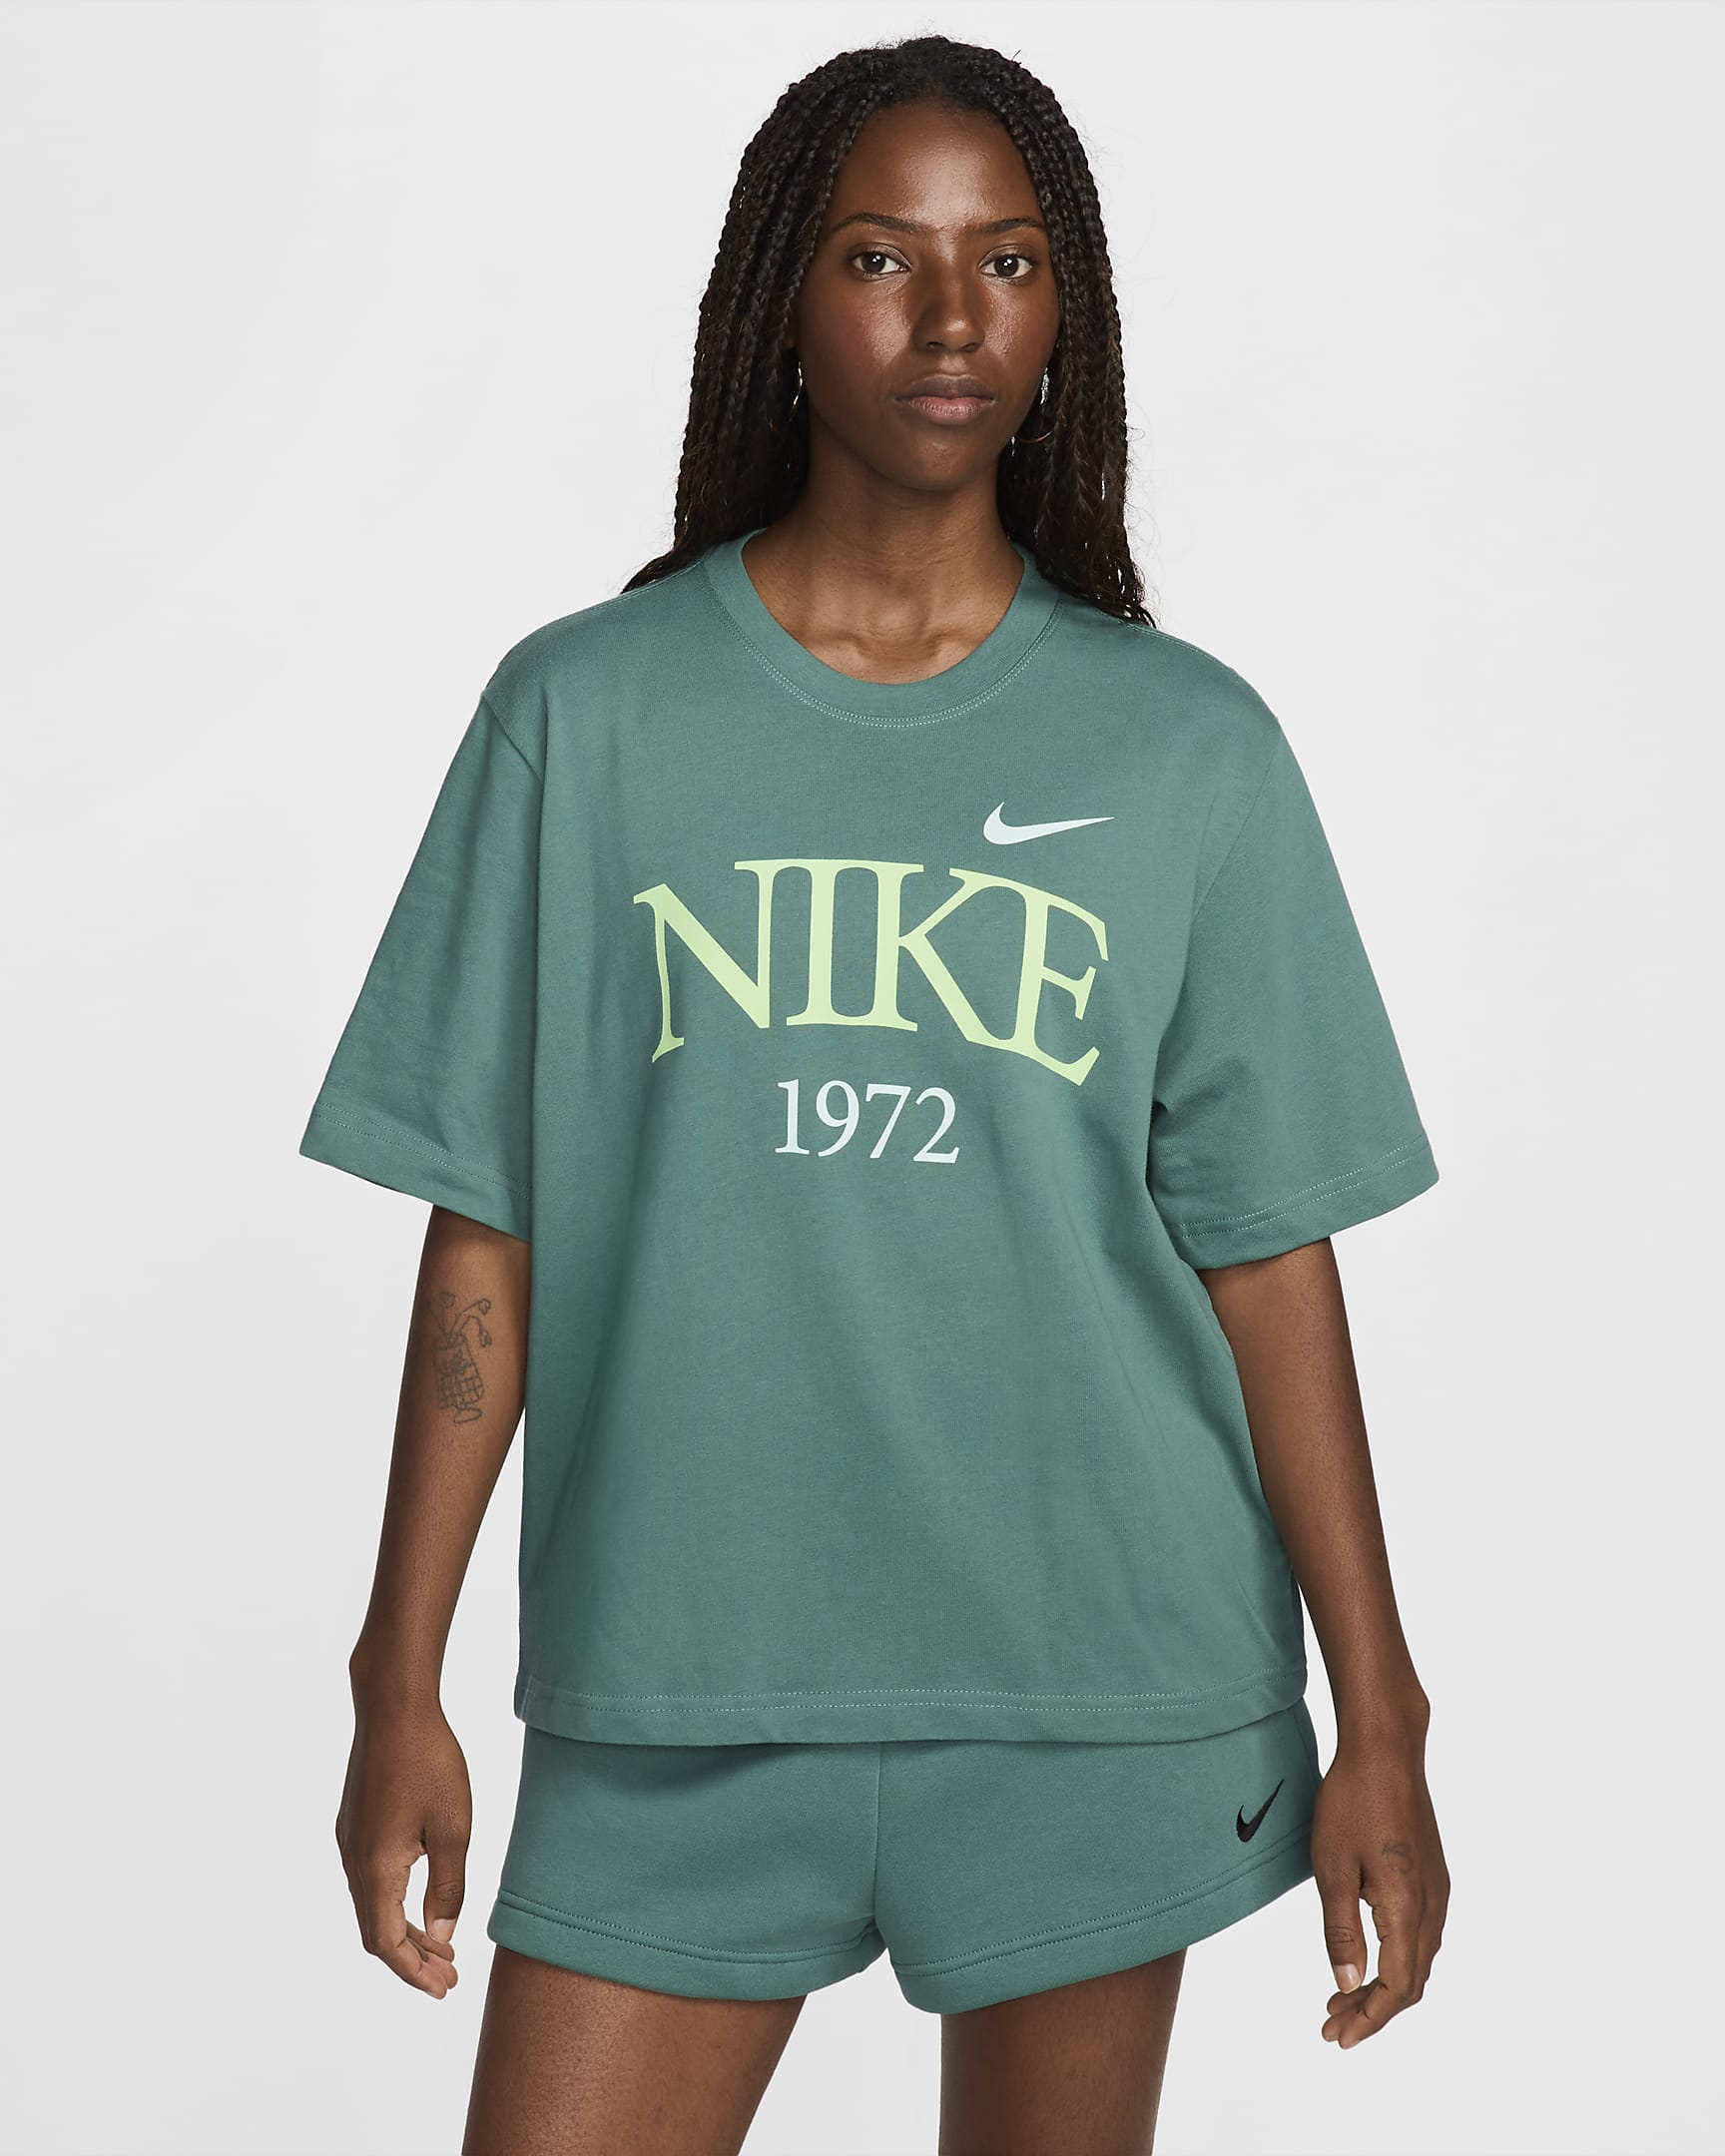 Nike Sportswear Classic Women's T-Shirt. Nike.com